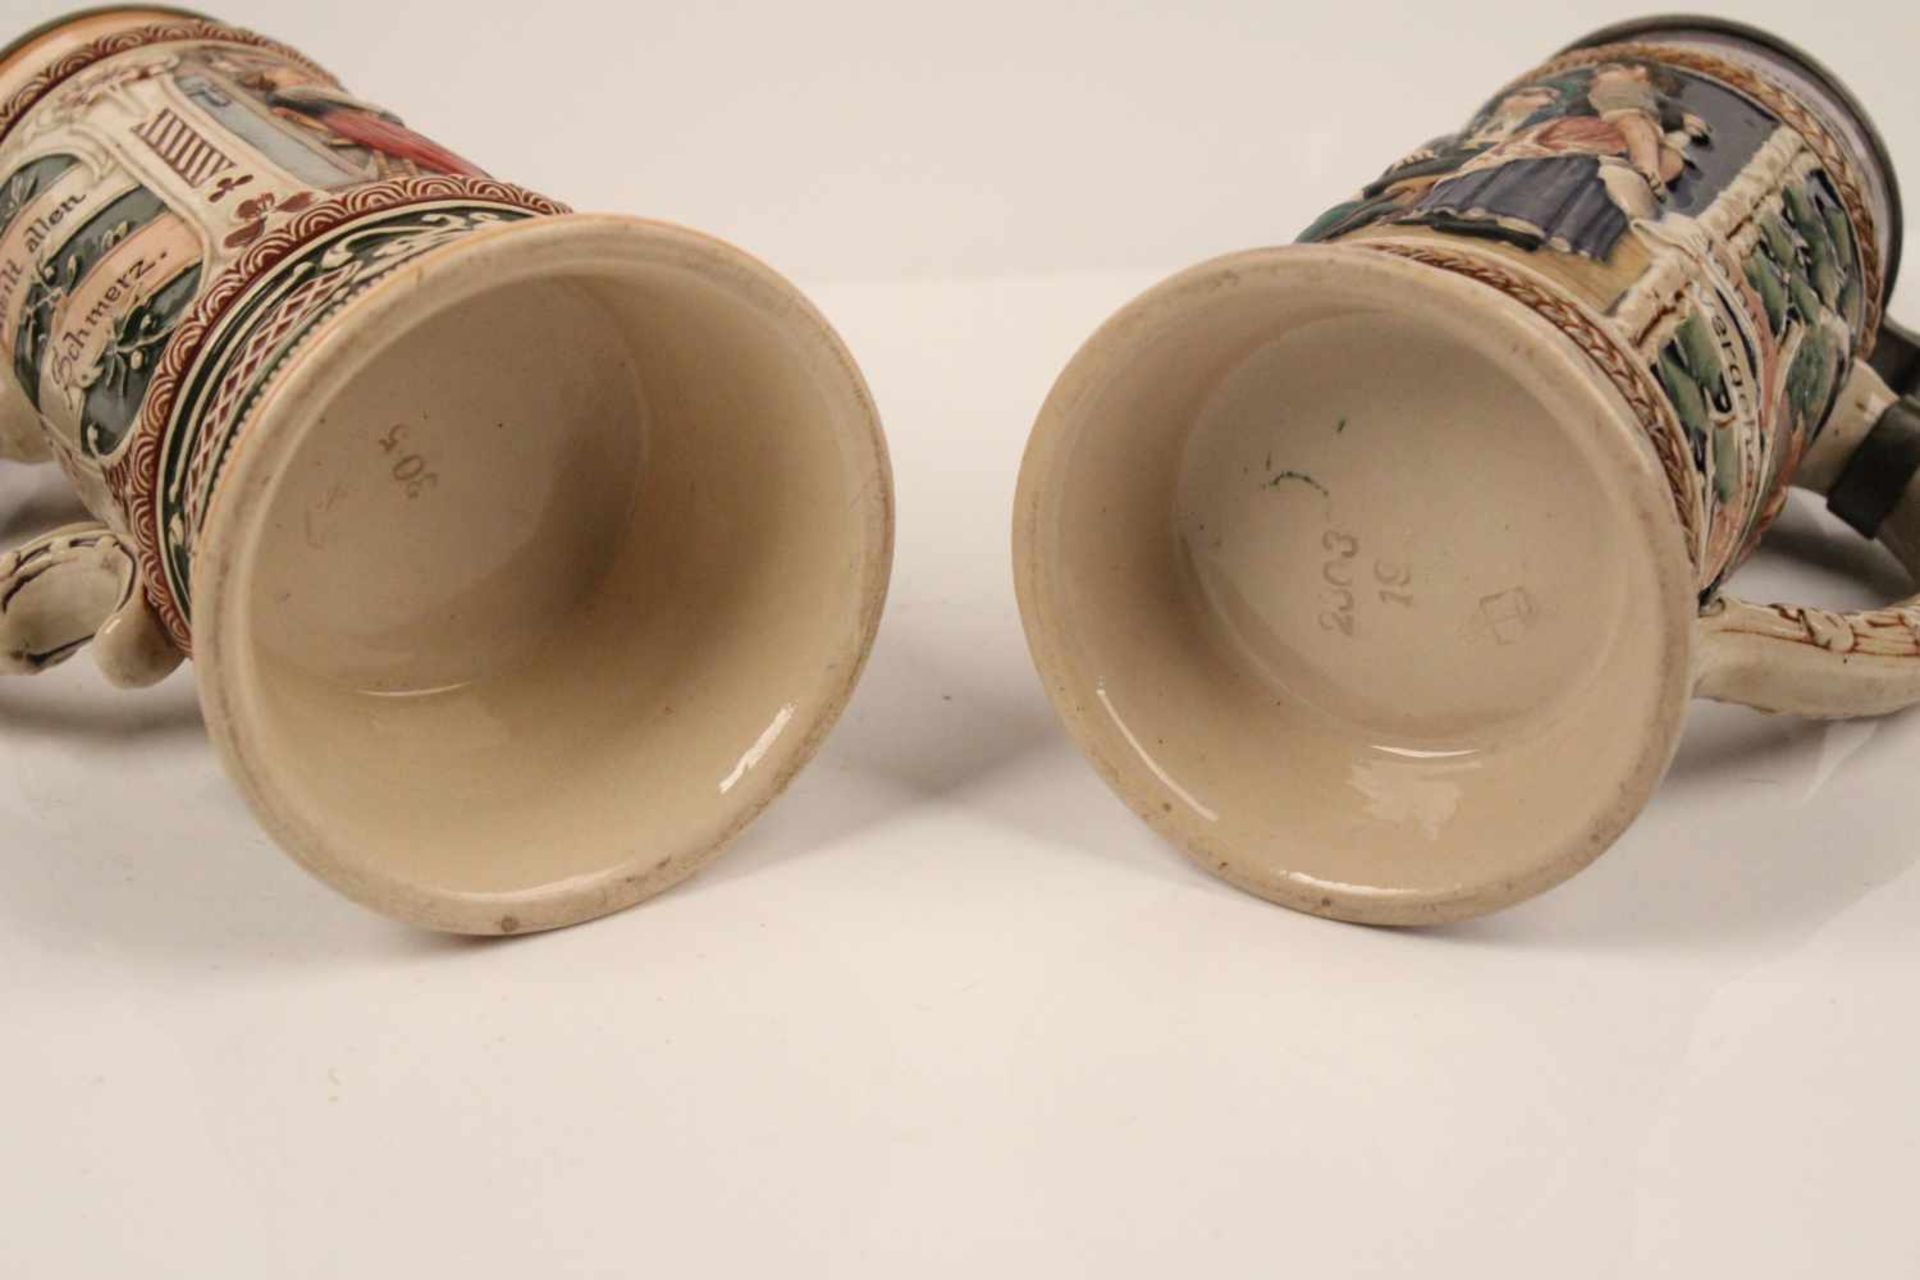 Zwei Bierkrüge.Keramik. Farbige Wirtshausszenen. Getreppter Zinndeckel mit Daumenrast. H: 26 - Bild 6 aus 6